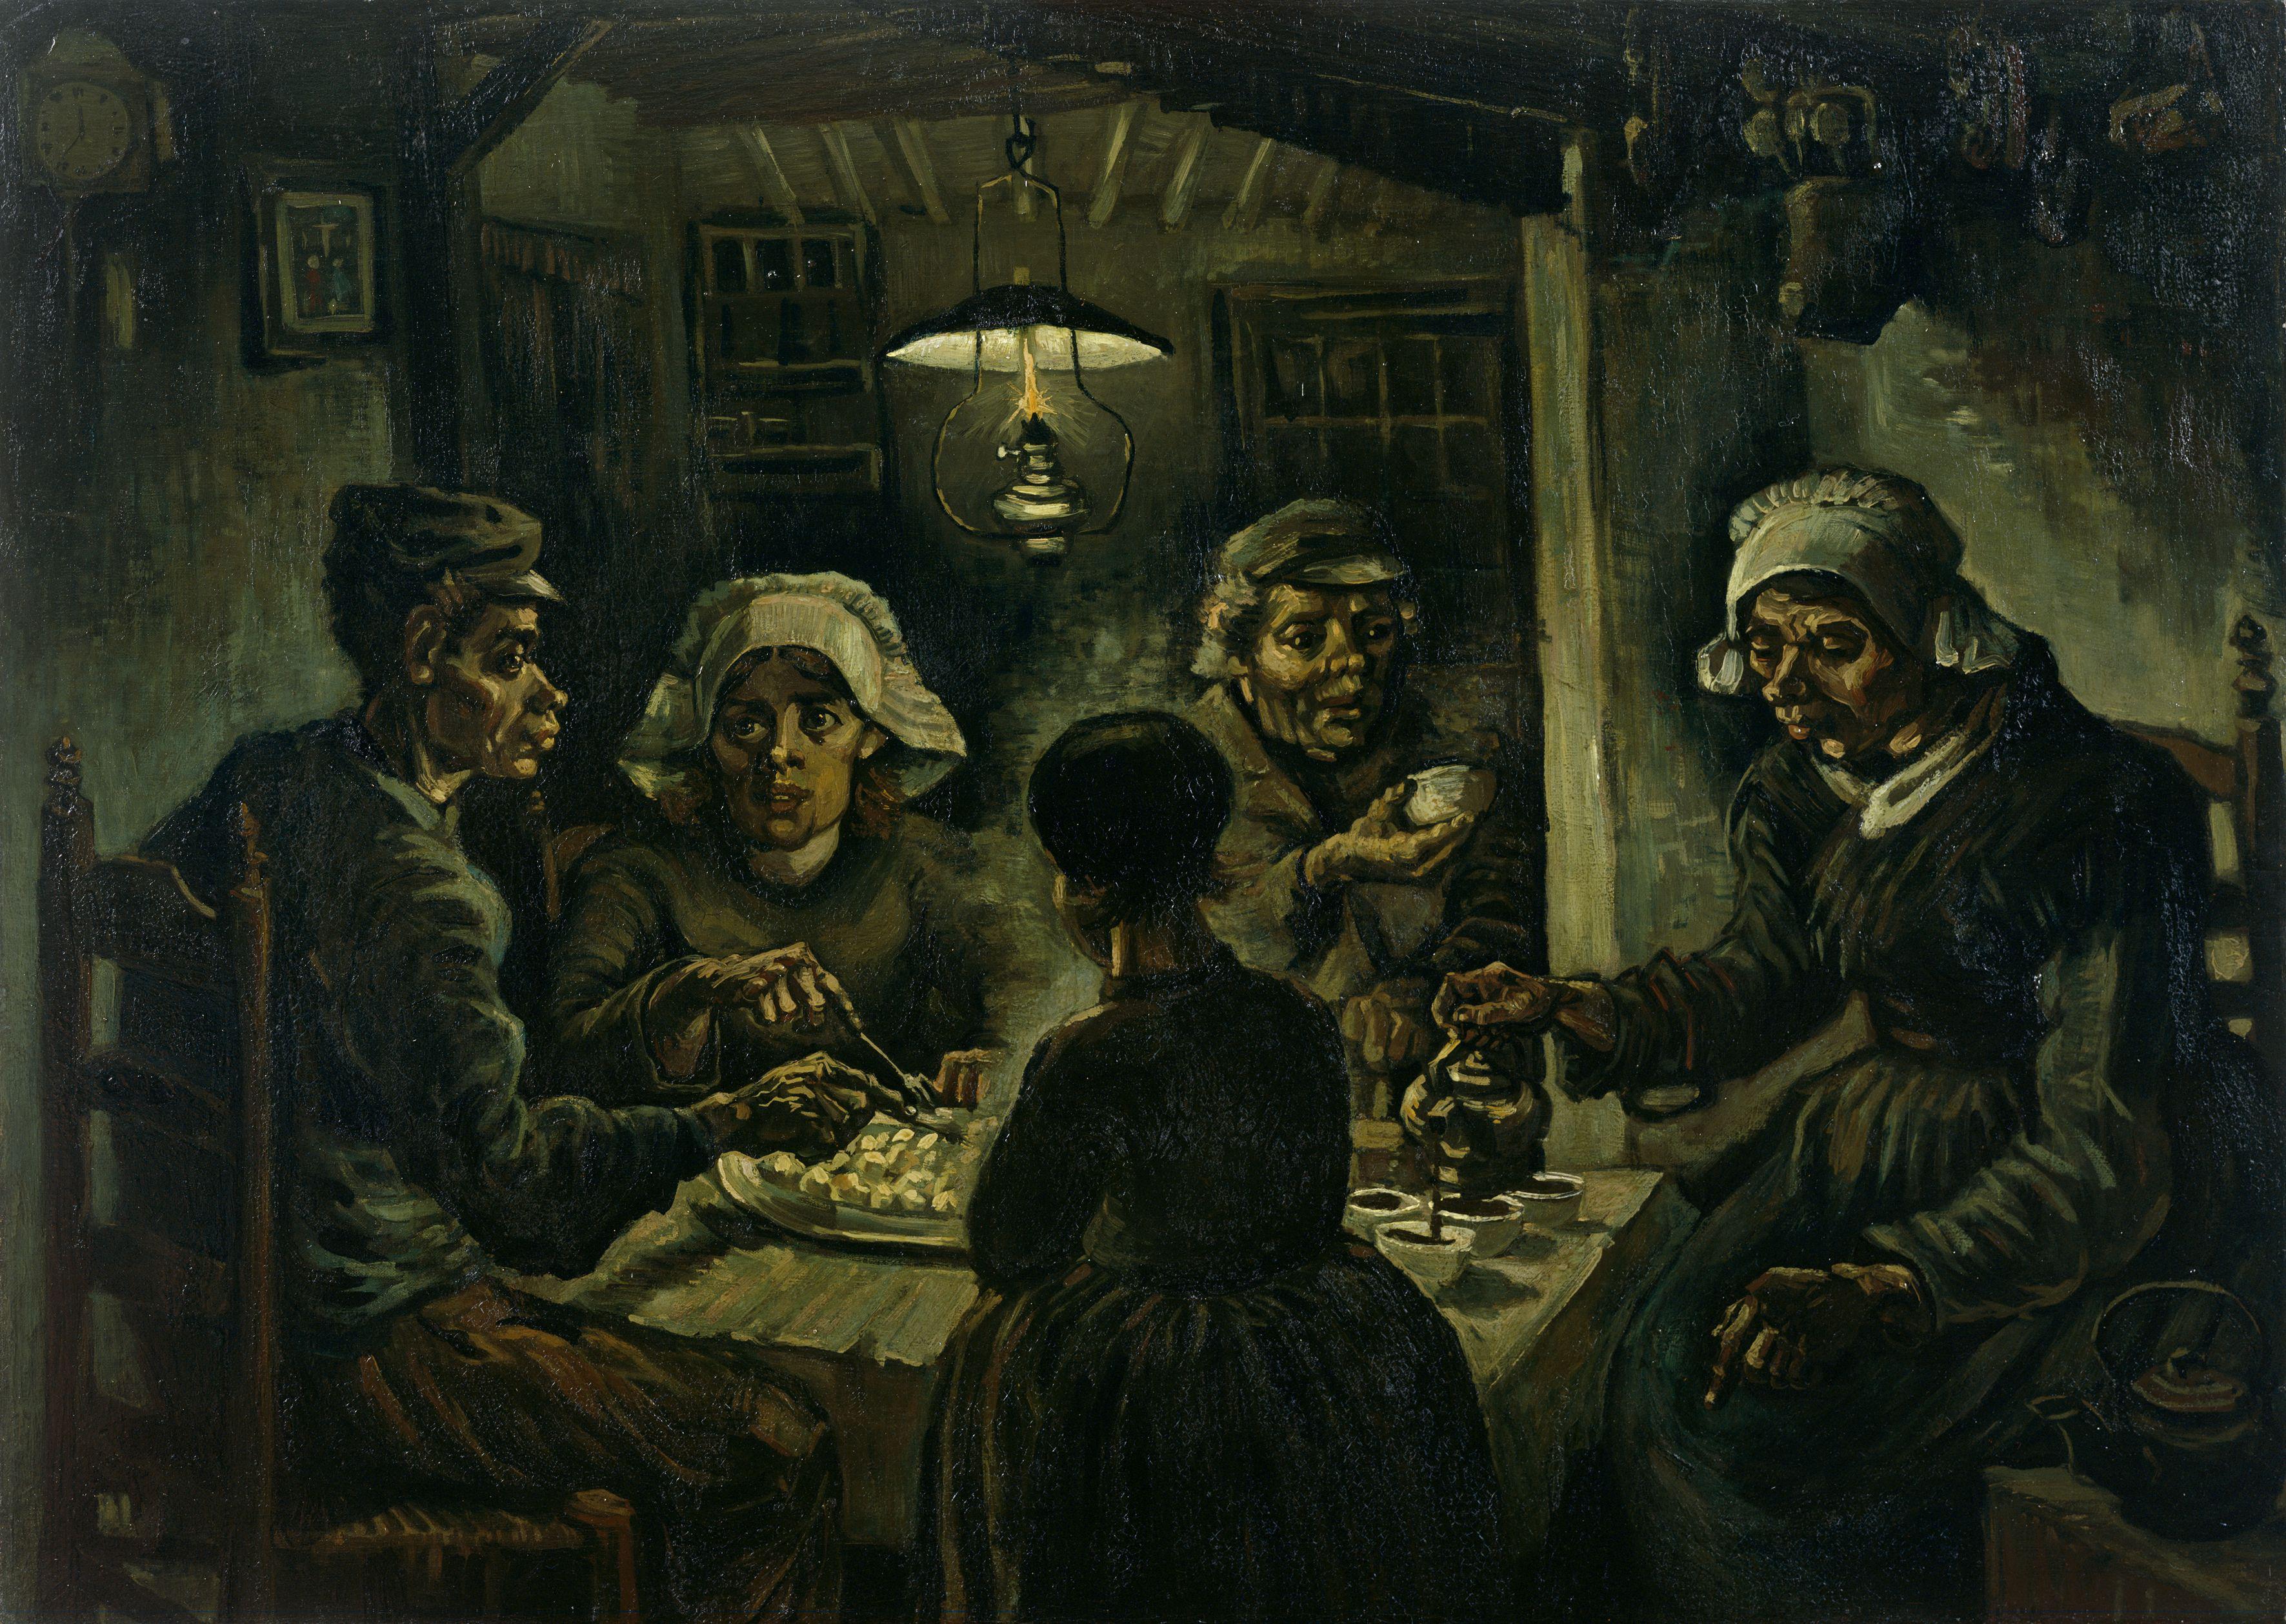 Les mangeurs de pommes de terre by Vincent van Gogh - 1885 - 82 × 114 cm Van Gogh Museum